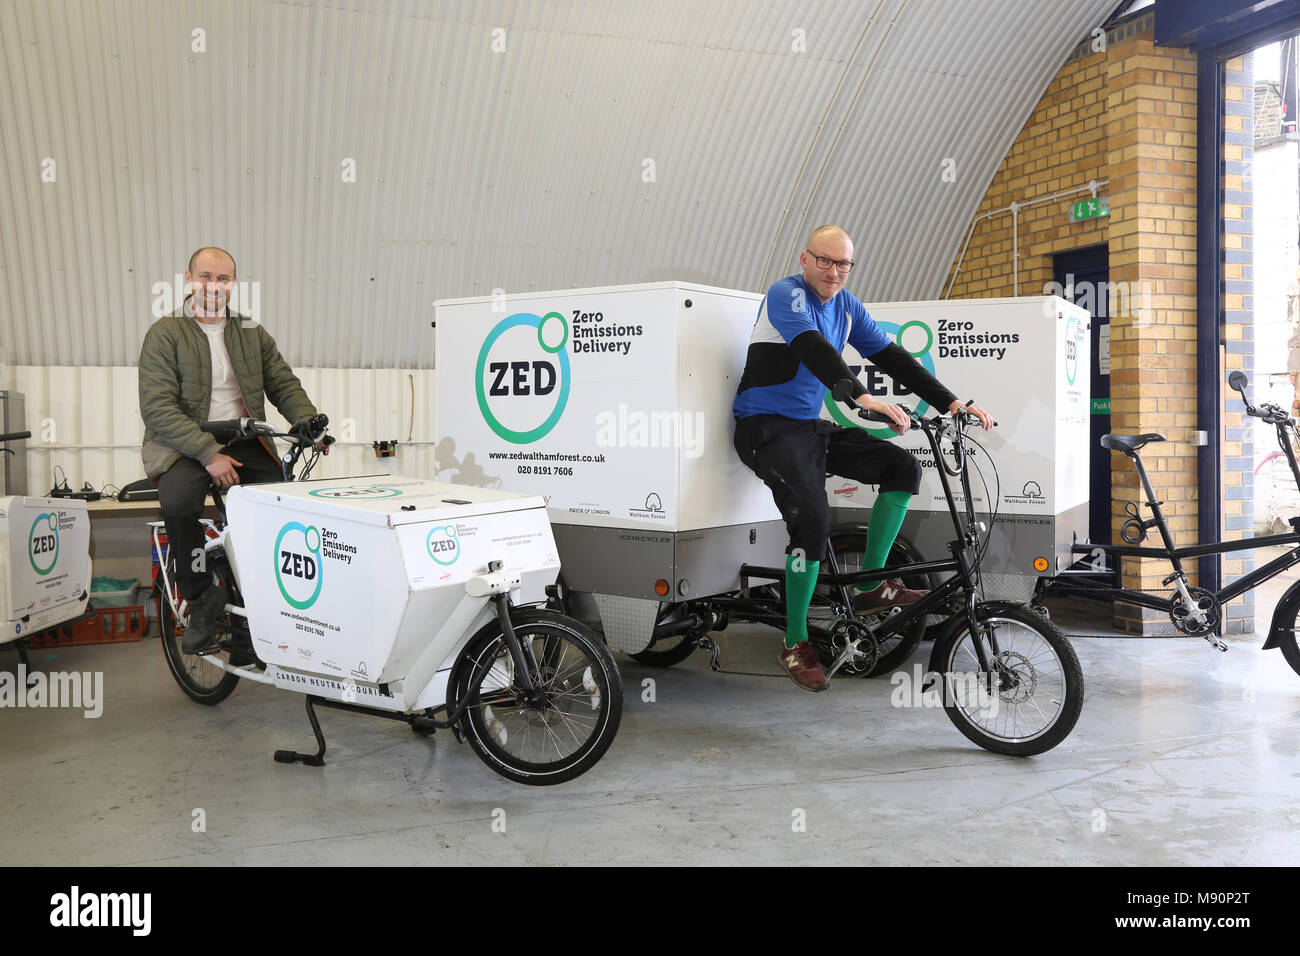 El personal de una empresa de distribución de emisiones cero sentarse en bicicletas de carga eléctrica utilizada para distribuir mercancías en Walthamstow, en el norte de Londres. Foto de stock